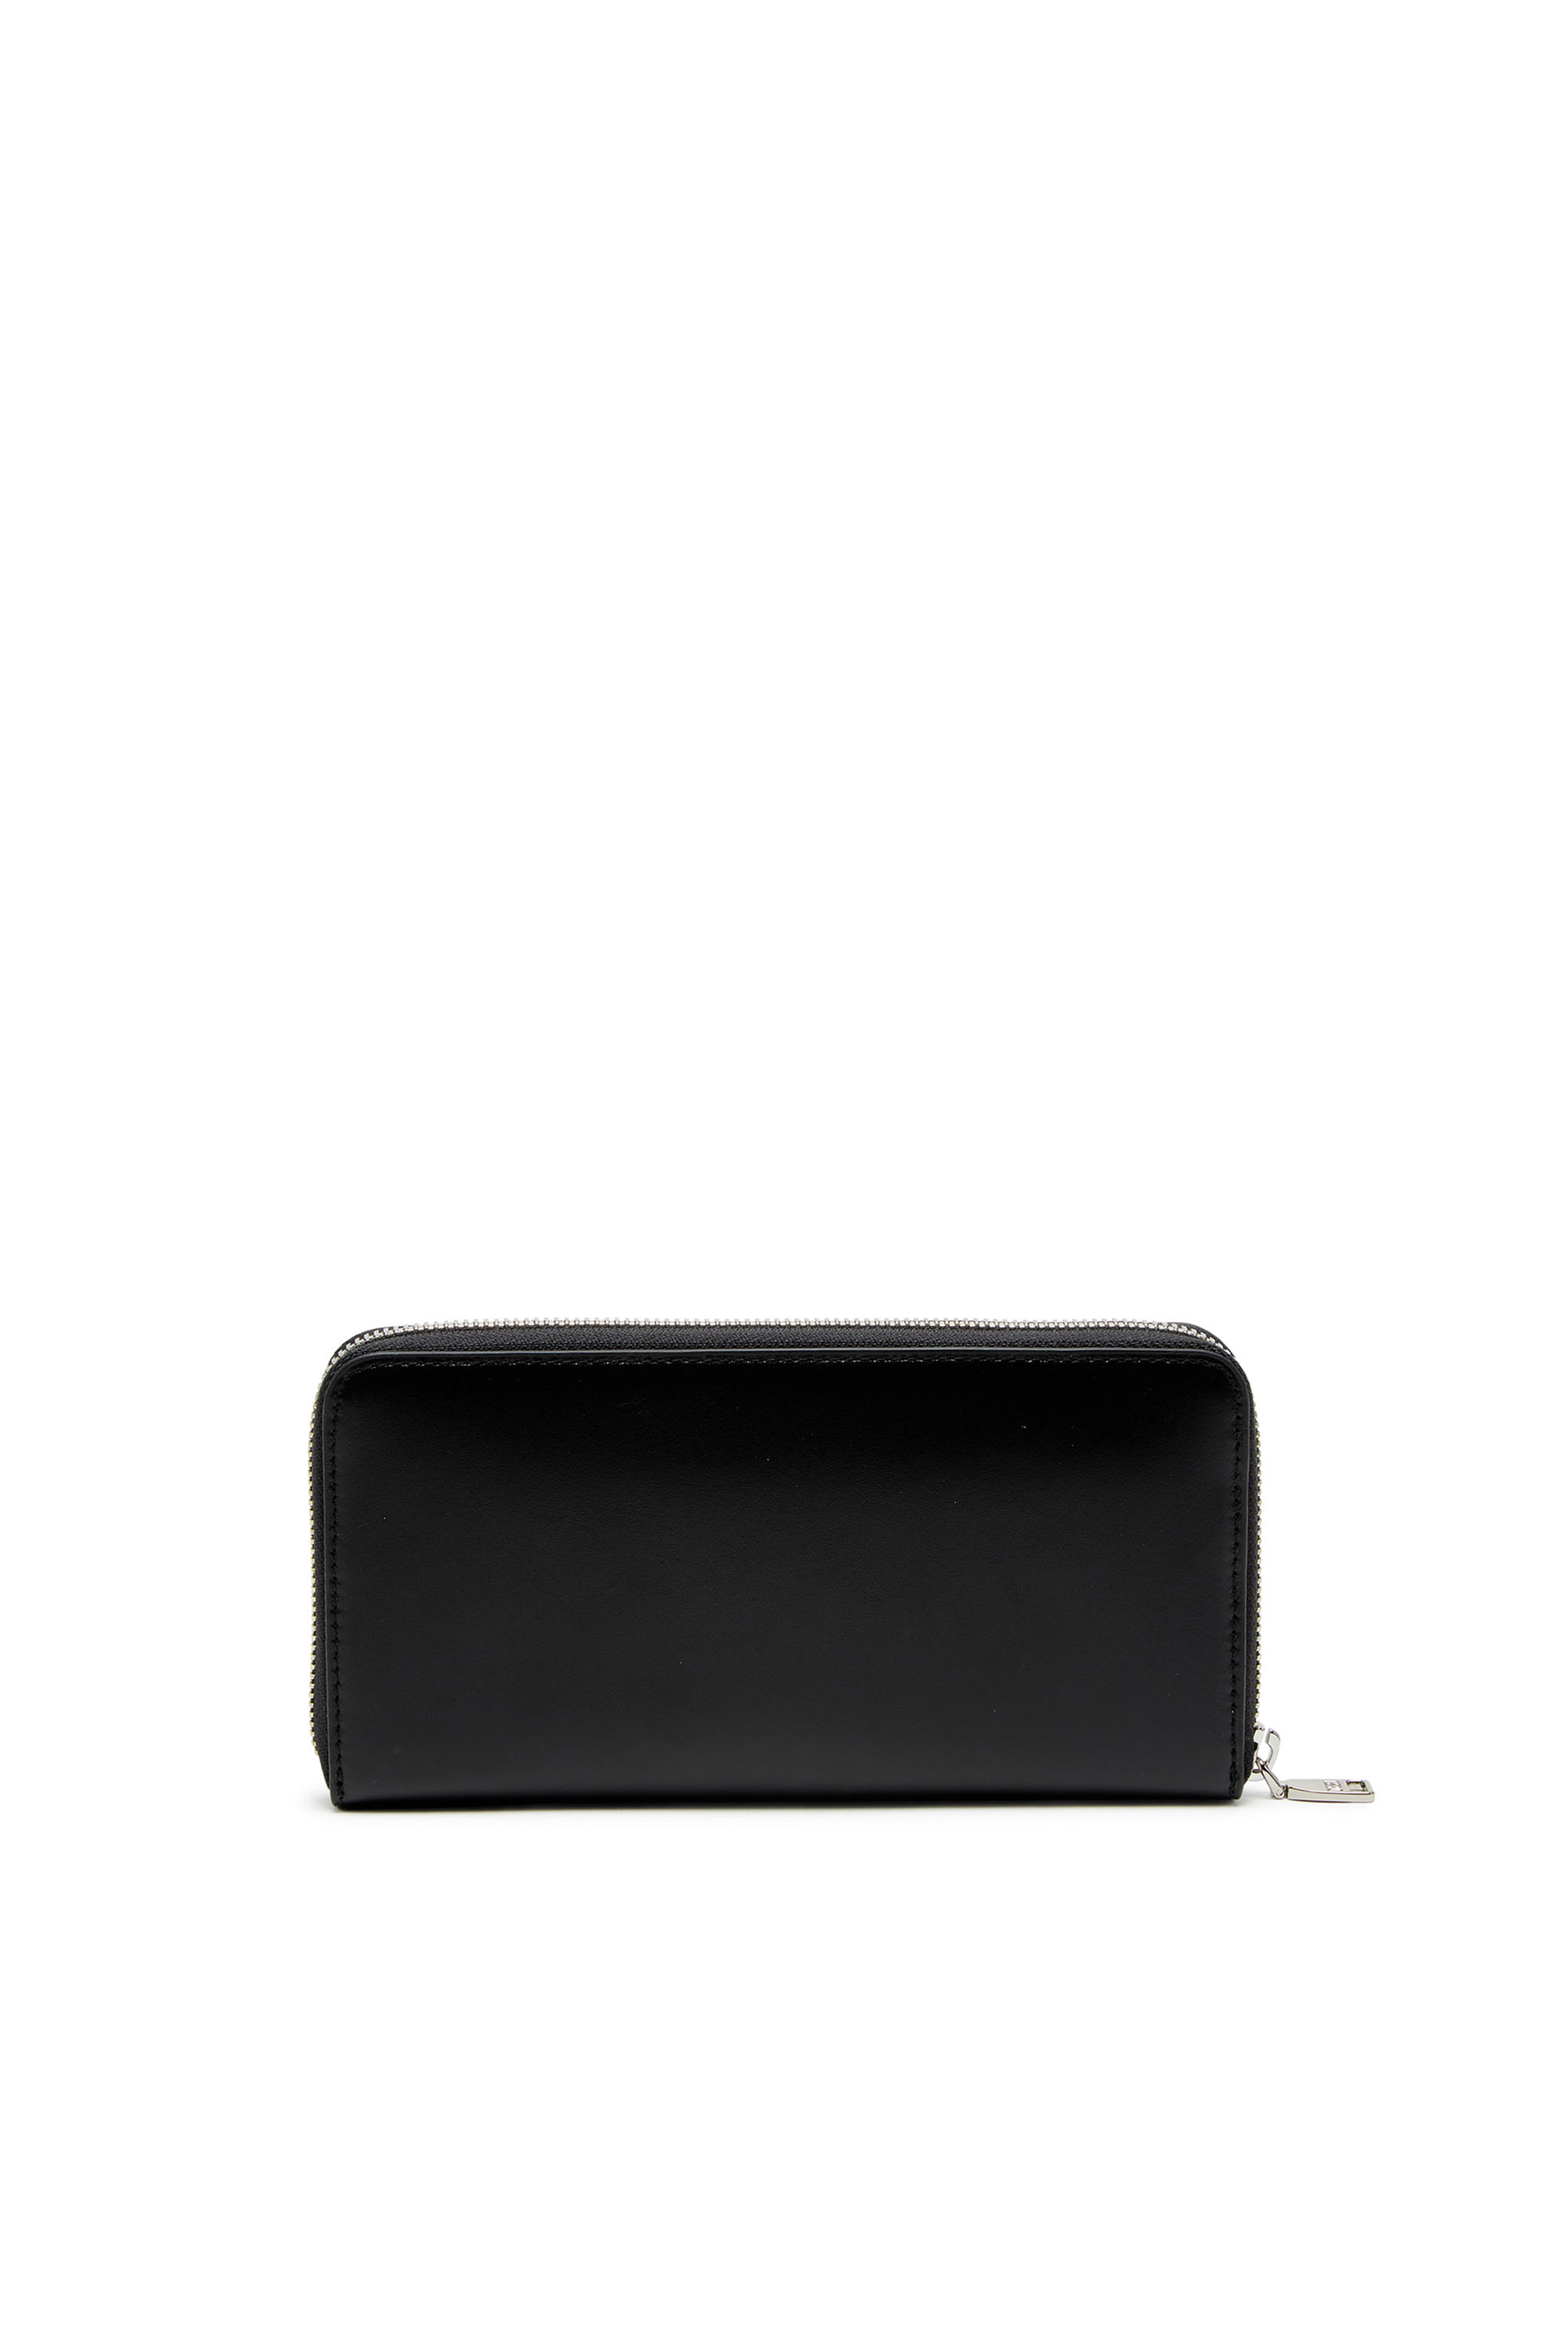 Diesel - DSL 3D -CONTINENTAL ZIP L, Man Long zip wallet in logo-embossed leather in Black - Image 2